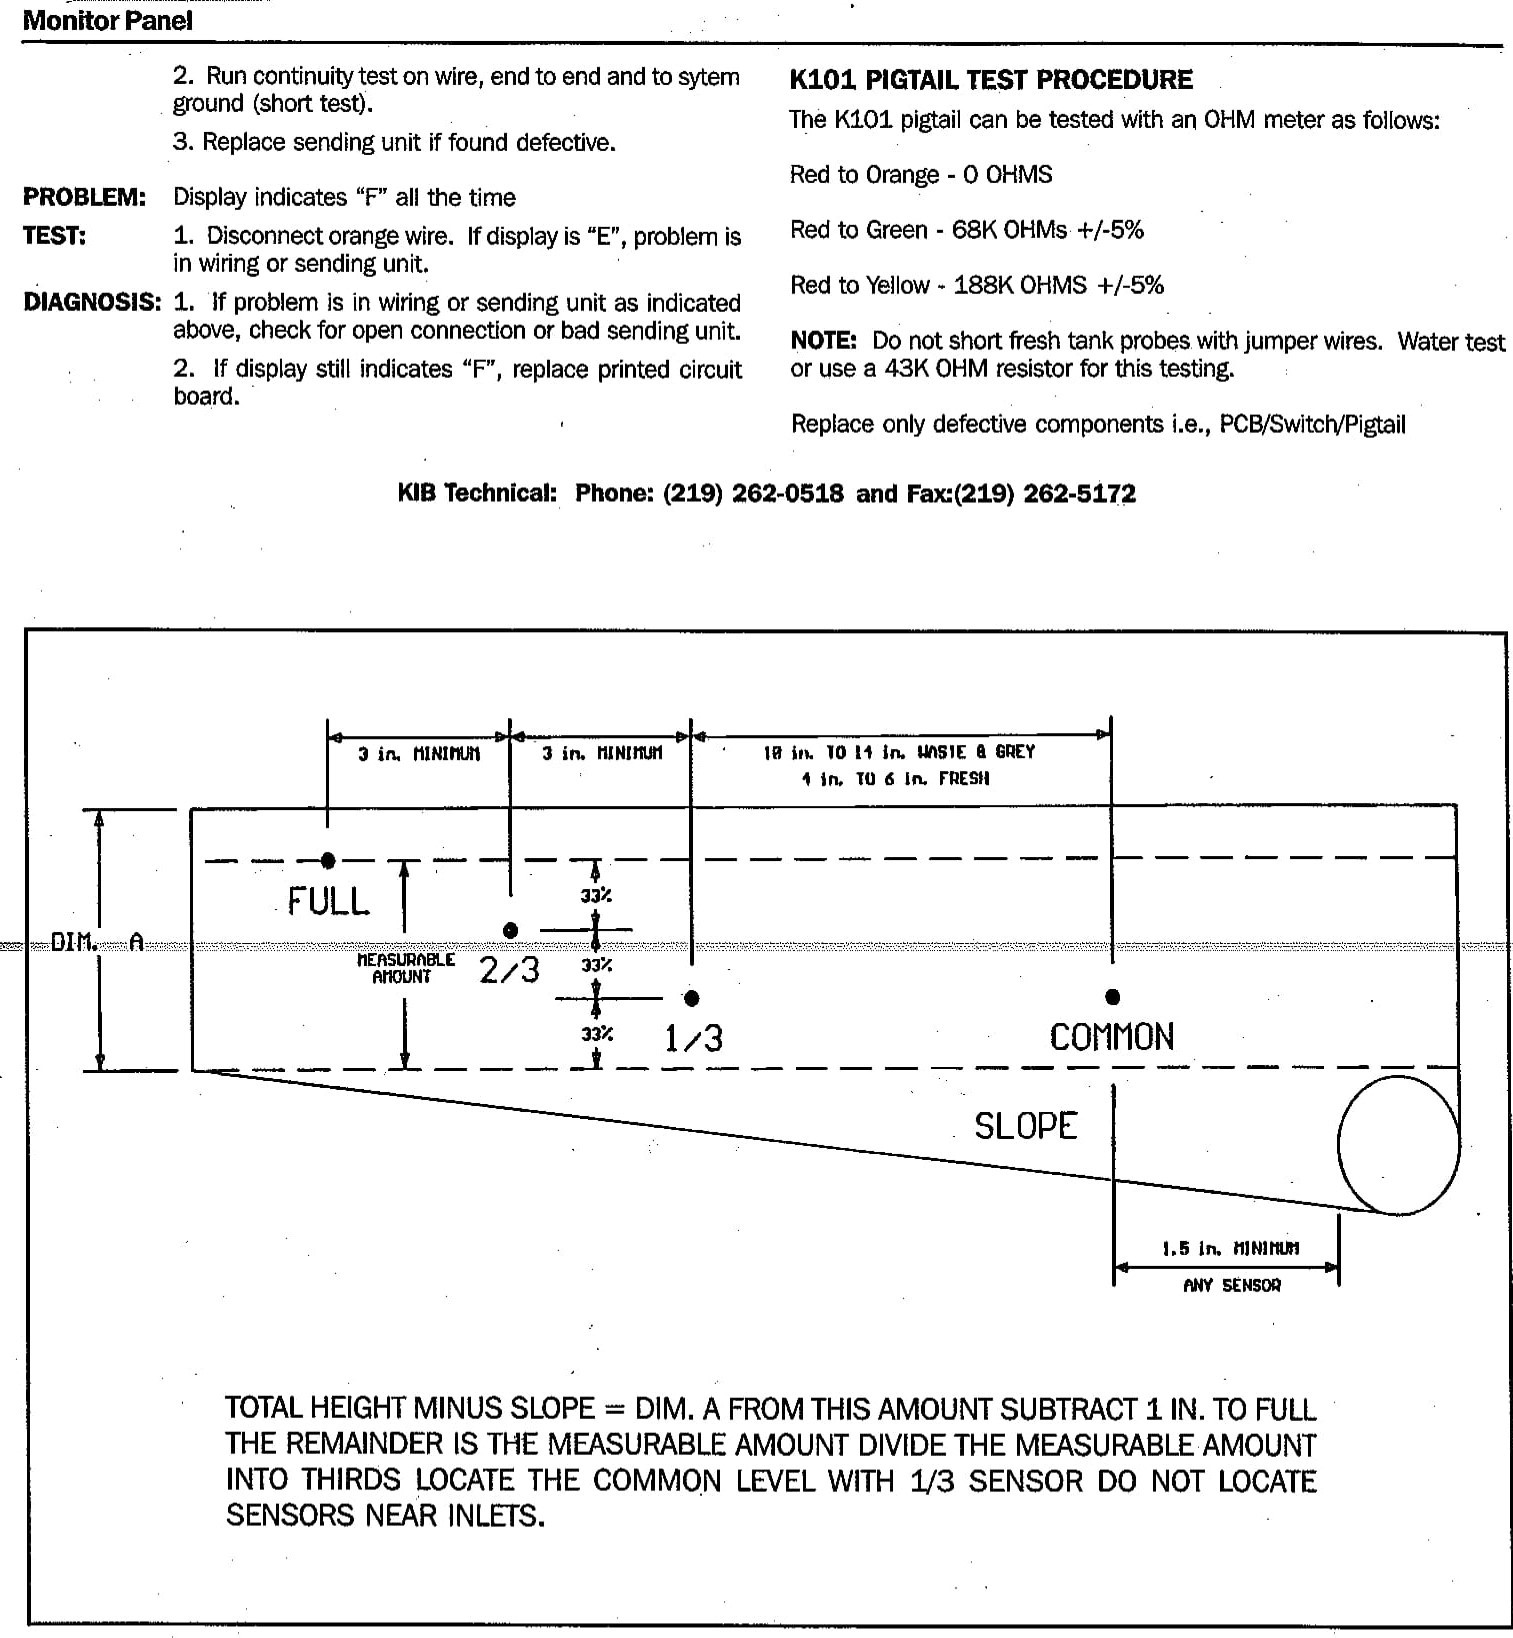 Kib M21vw Wiring Diagram Cd79 Kib Monitor Wiring Diagram Of Kib M21vw Wiring Diagram